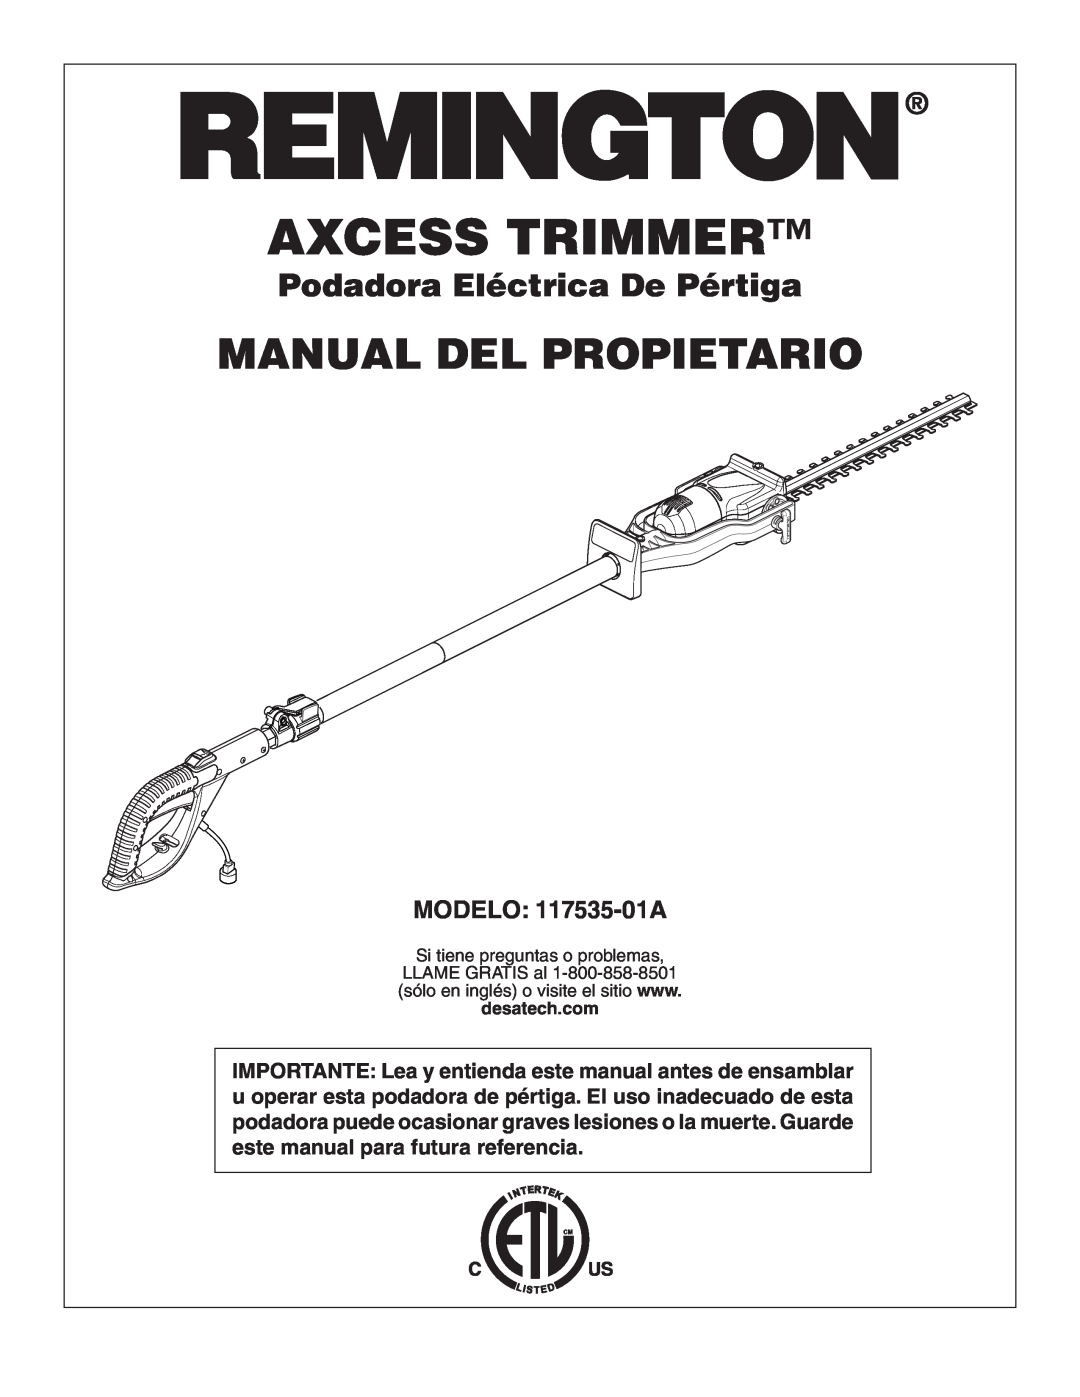 Remington Power Tools Manual Del Propietario, Podadora Eléctrica De Pértiga, MODELO 117535-01A, Axcess Trimmer 